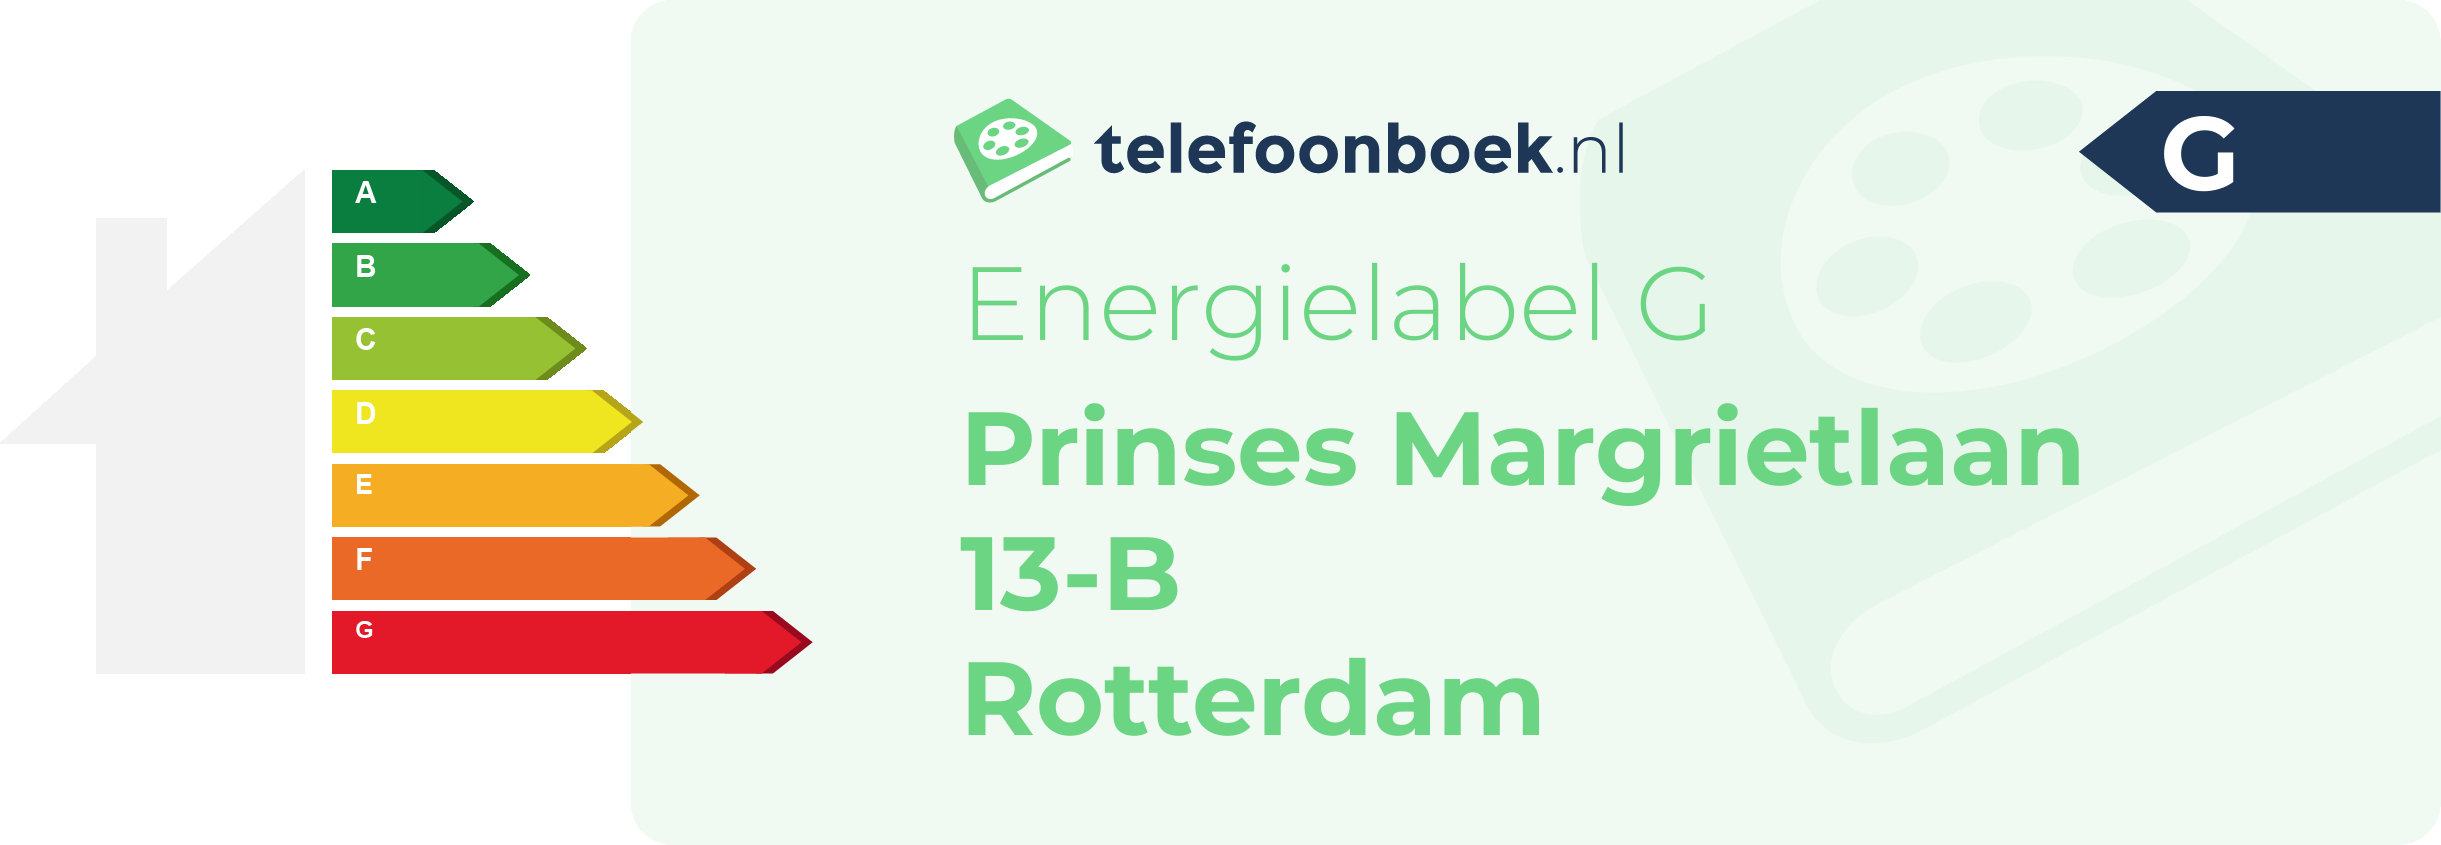 Energielabel Prinses Margrietlaan 13-B Rotterdam